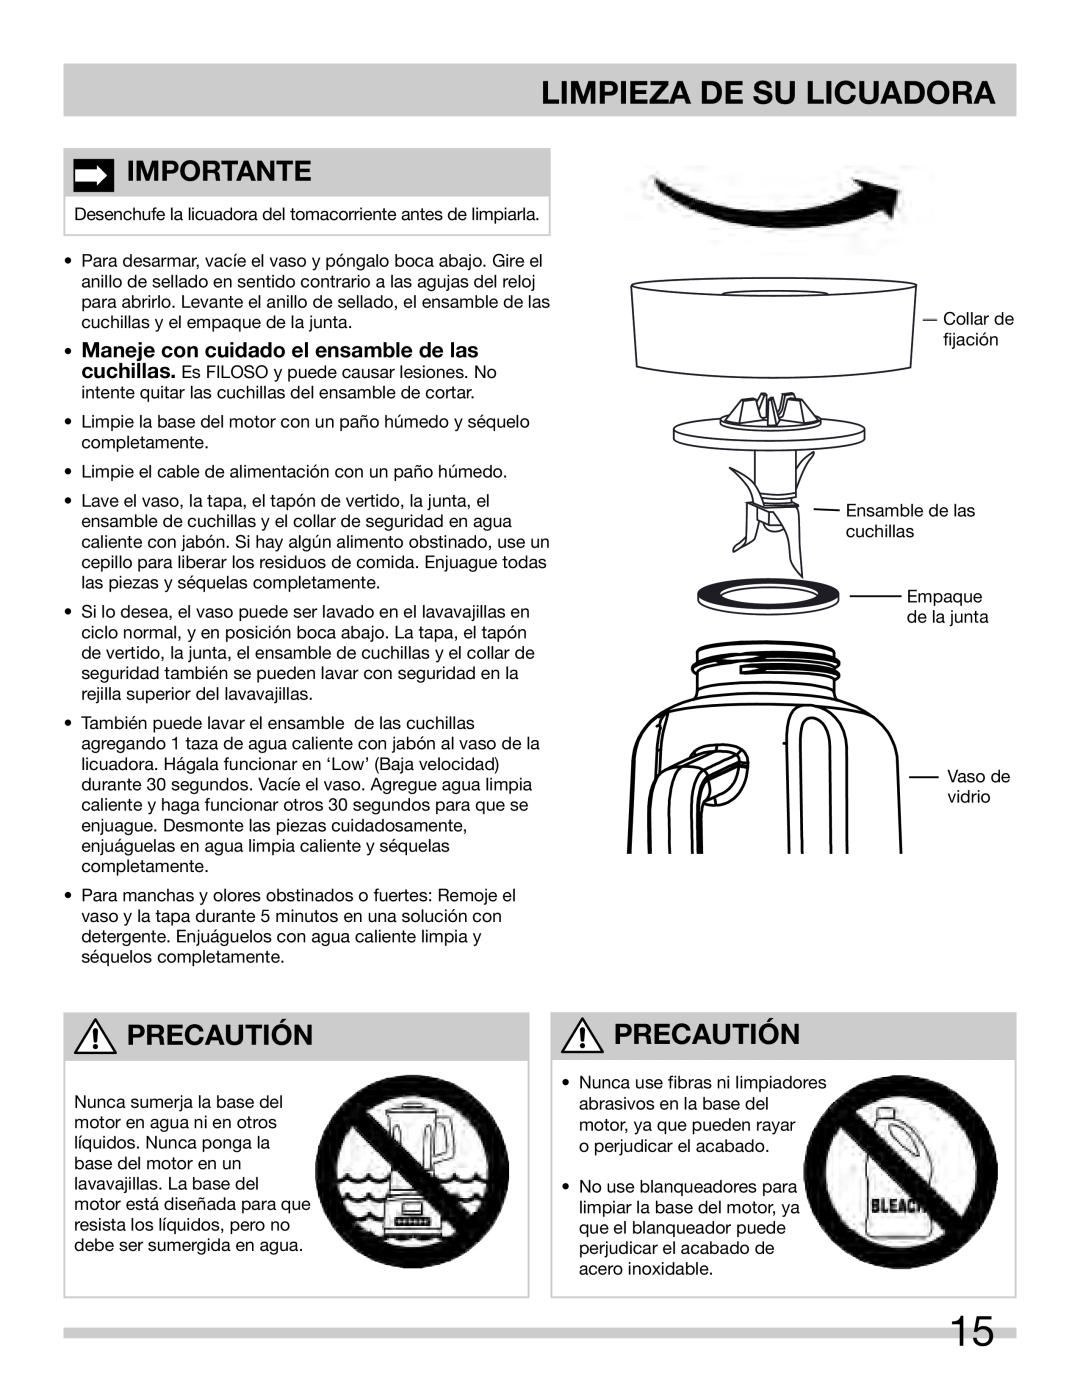 Frigidaire 900253211-UM warranty Limpieza De Su Licuadora, Importante, Precautión 